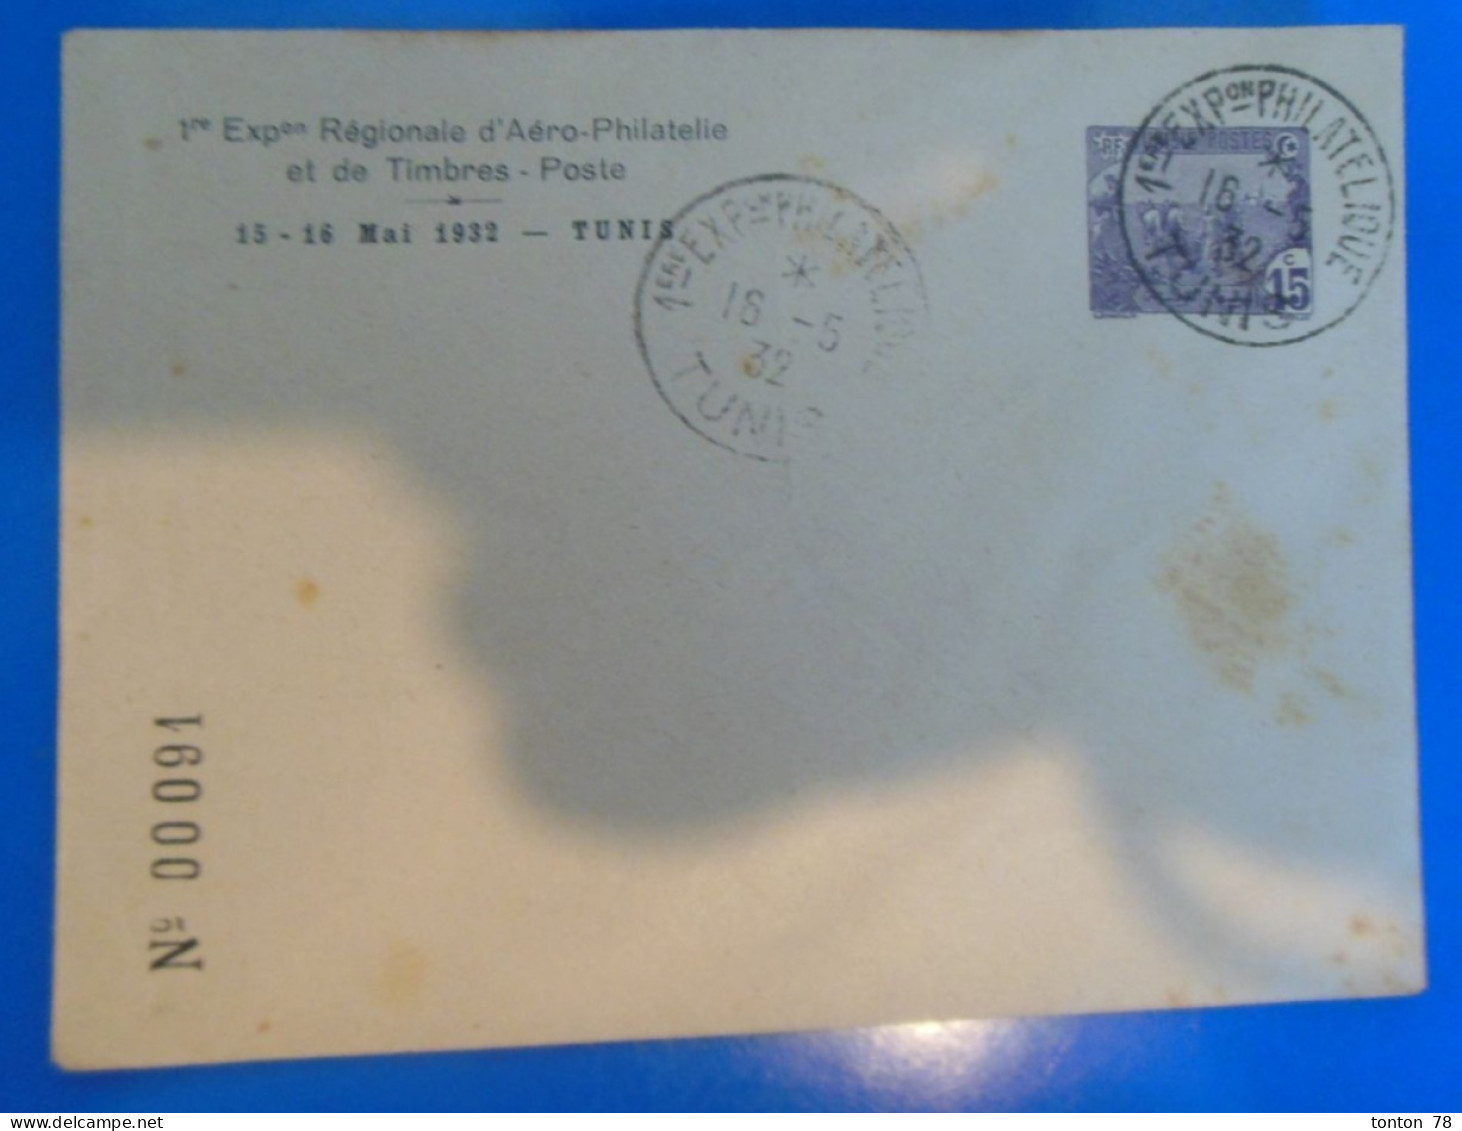 LETTRE DE TUNISIE  -  1ere EXPOSITION D'AERO-PHILATELIE ET DE TIMBRES POSTES 15 ET 16 MAI 1932  -  N° 00091 - Covers & Documents